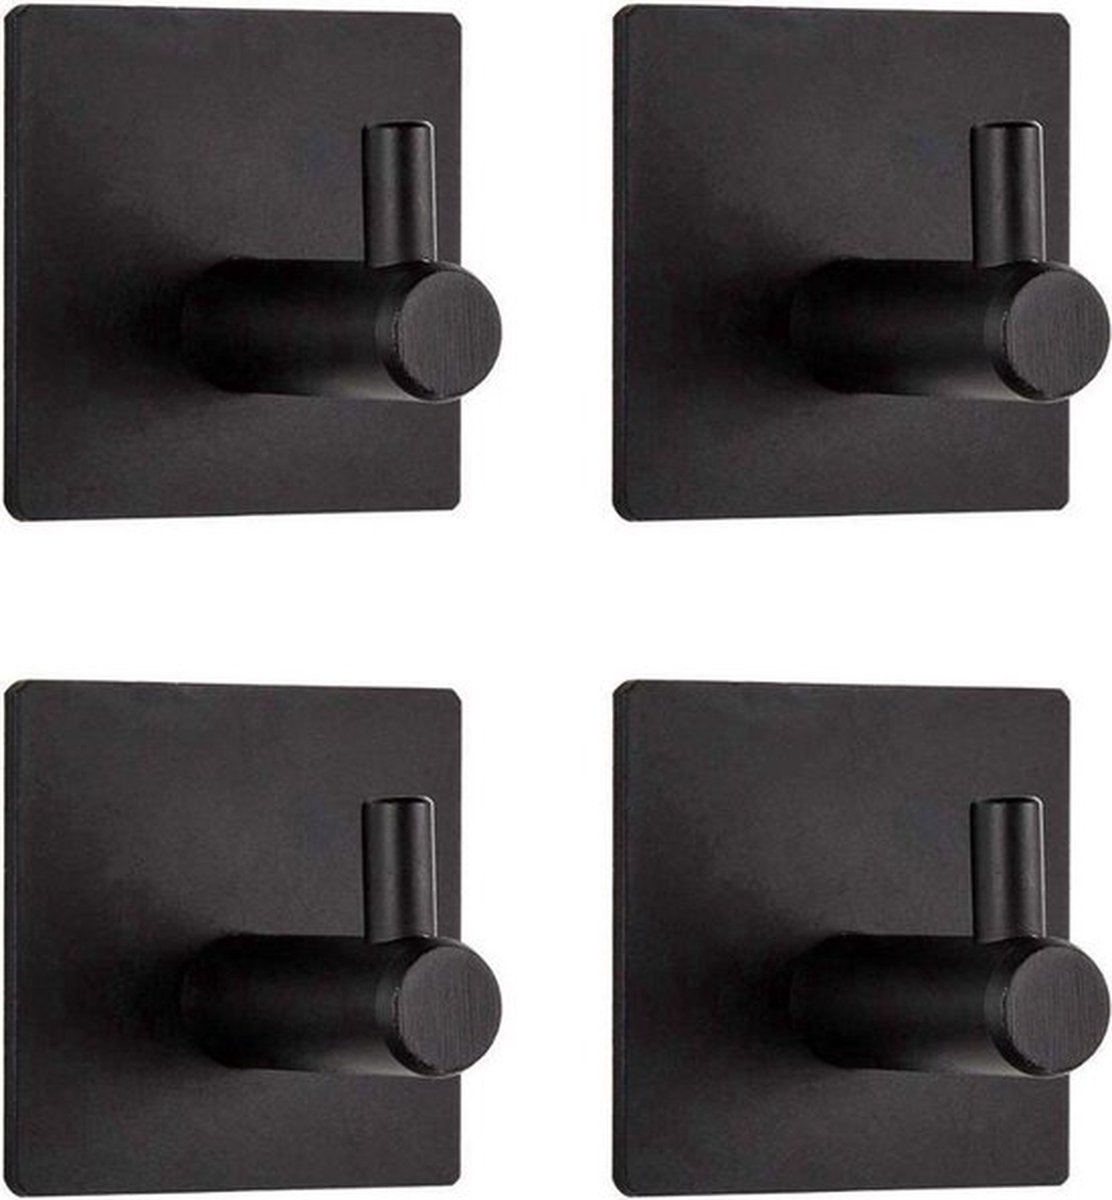 Handdoekhaakjes-Zelfklevend-Zwart-set 4 stuks-Luxe design-Multifunctioneel-Wandhaakjes - Merkloos